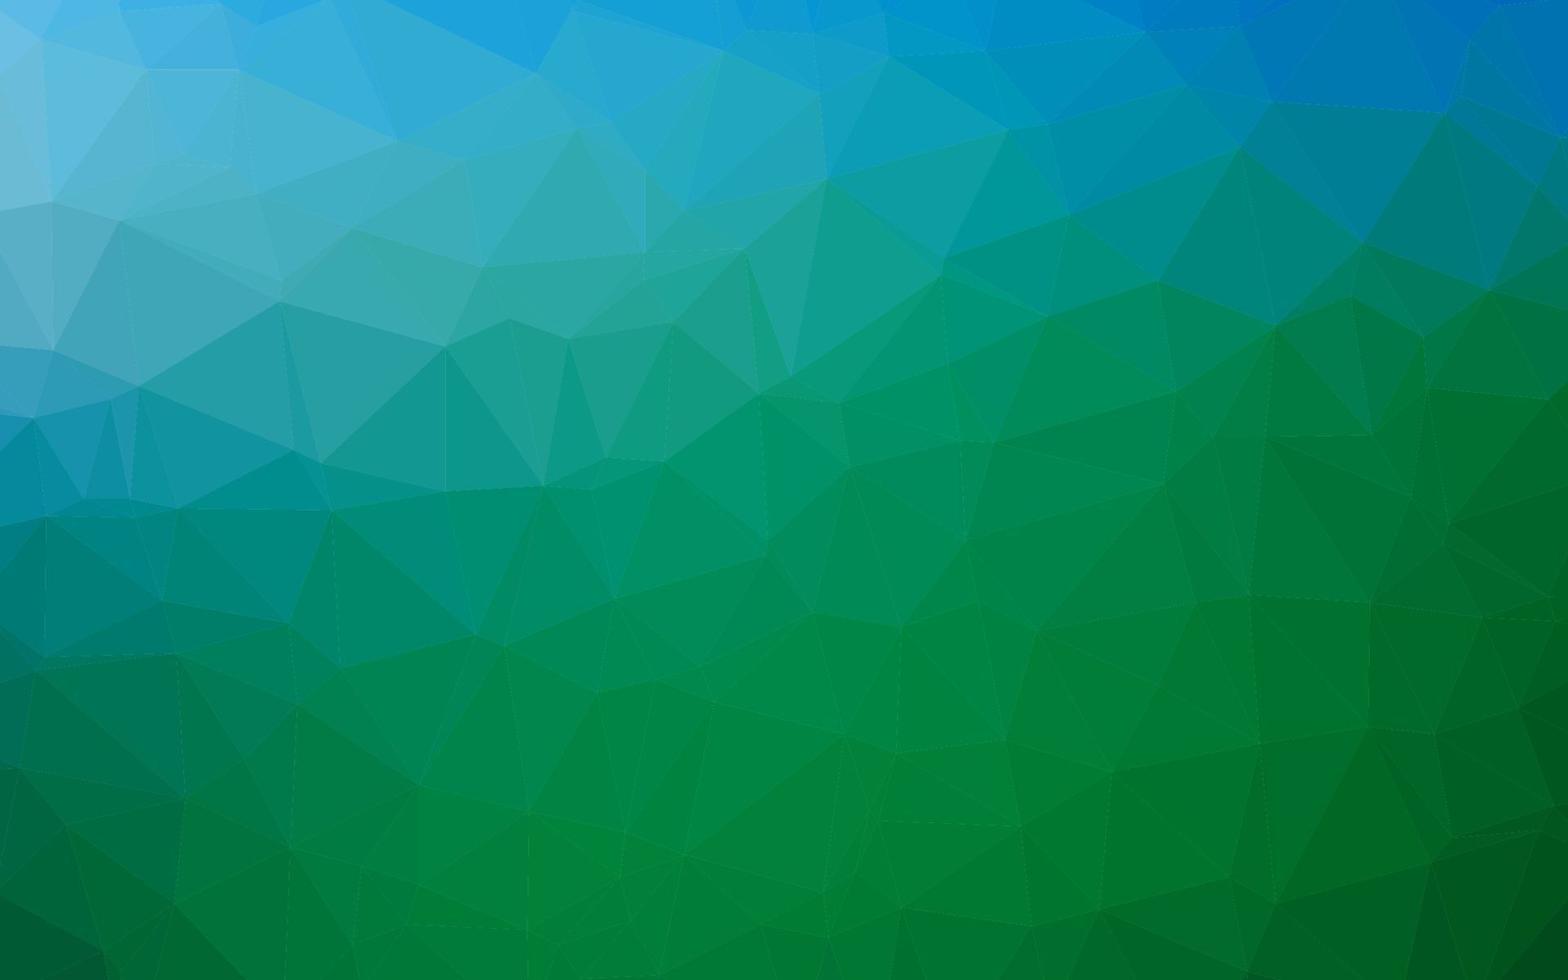 luz azul, verde vetor brilhante padrão triangular.